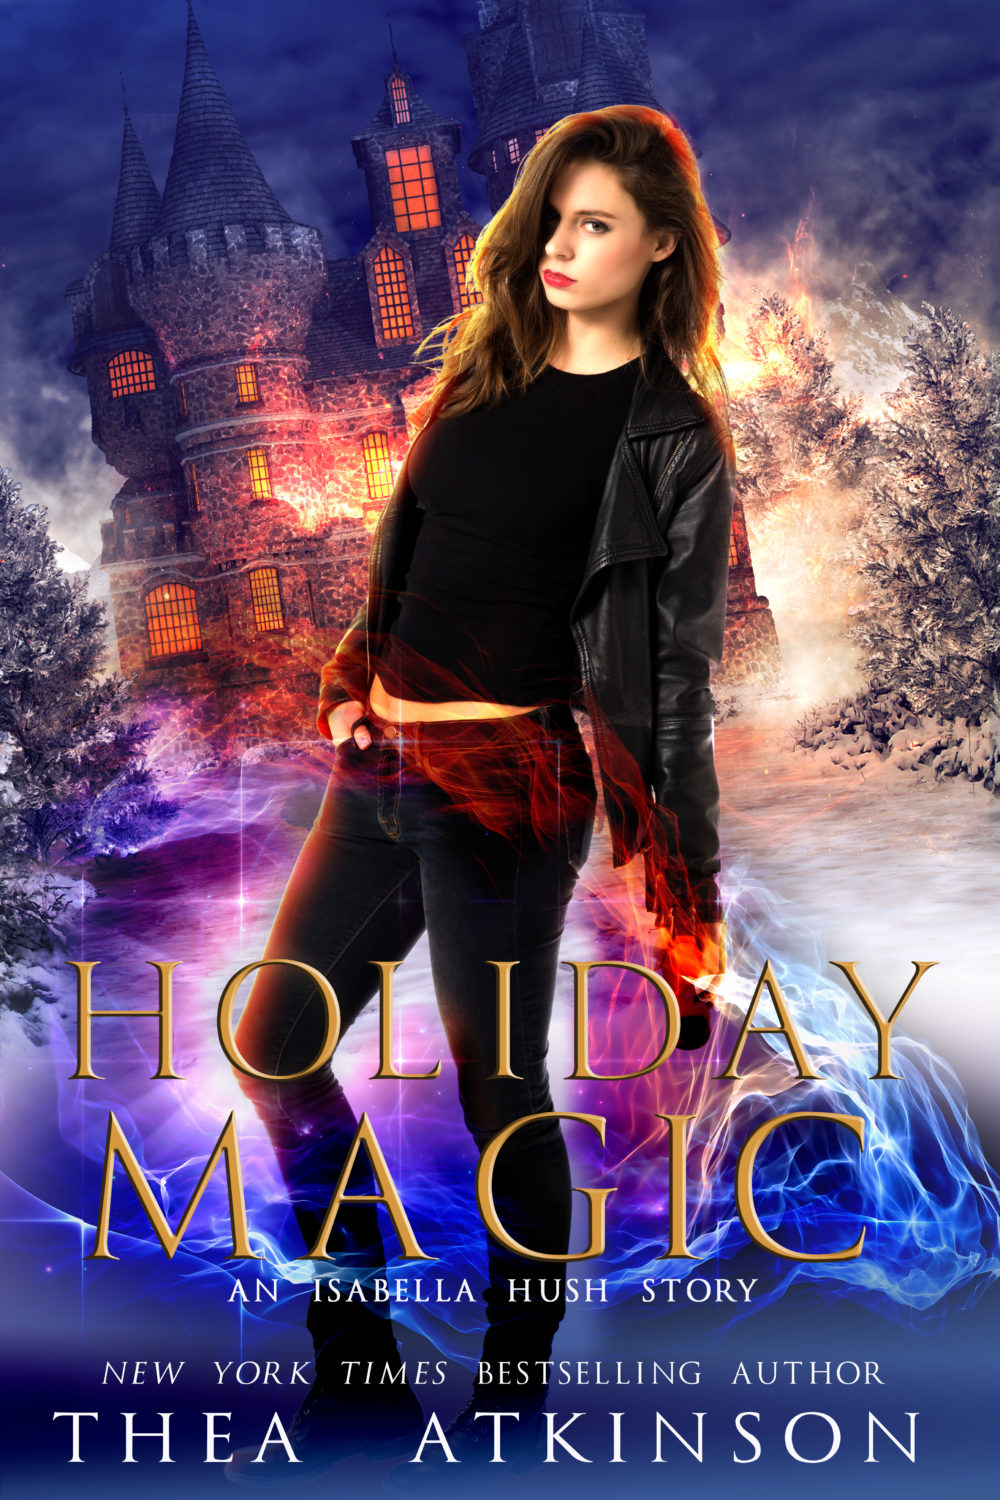 Holiday Magic: An Isabella Hush Christmas Story